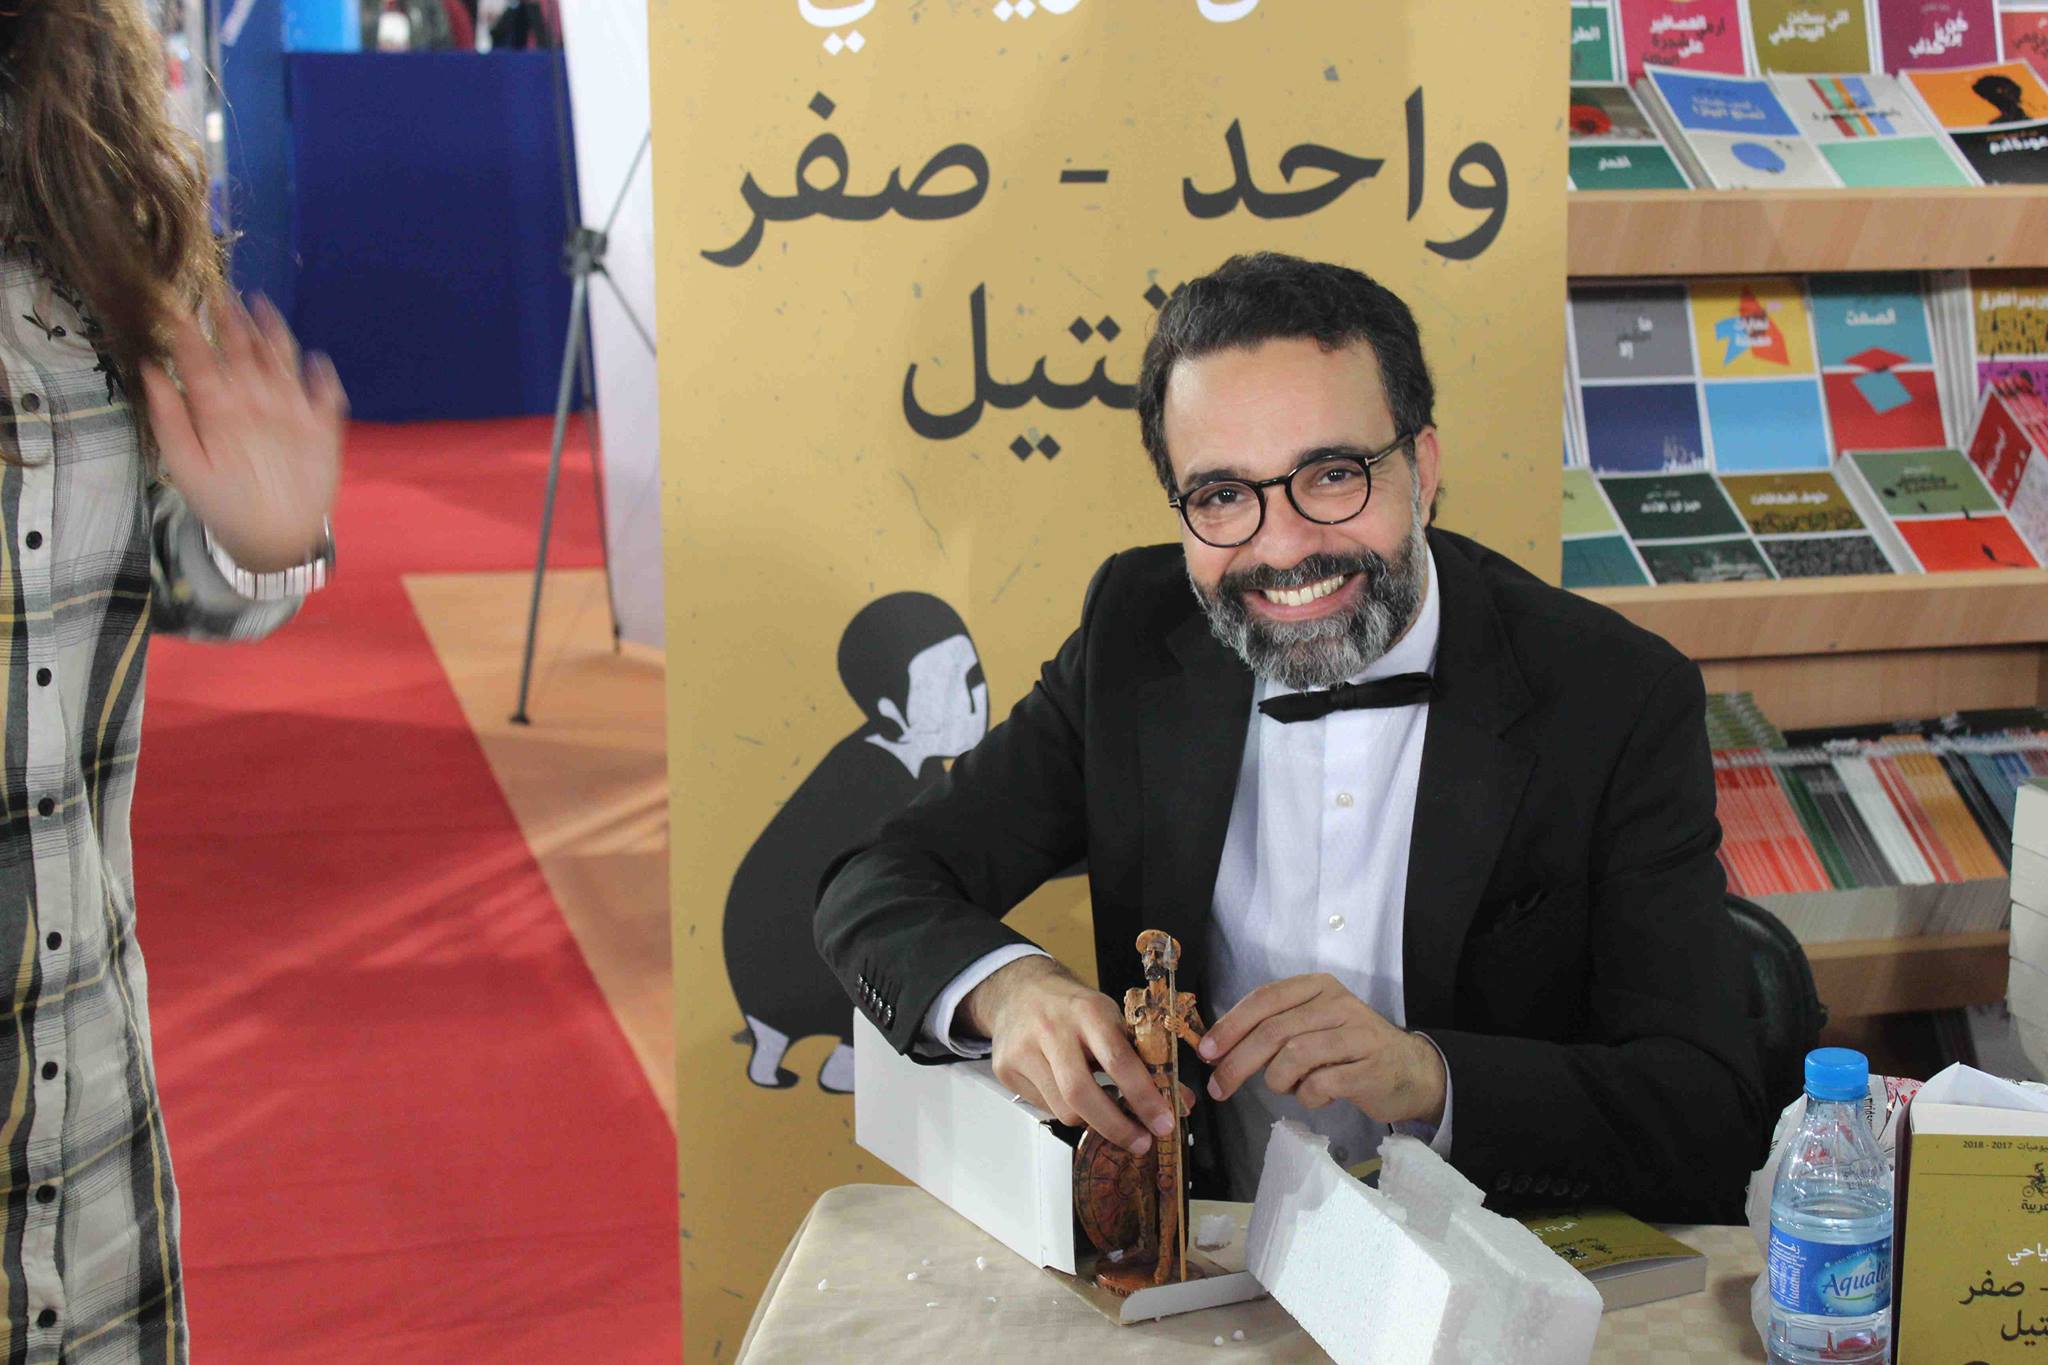 كمال الرياحى يوقع كتابه واحد صفر للقتيل الفائز بجائزة ابن بطوطة فى معرض تونس (14)